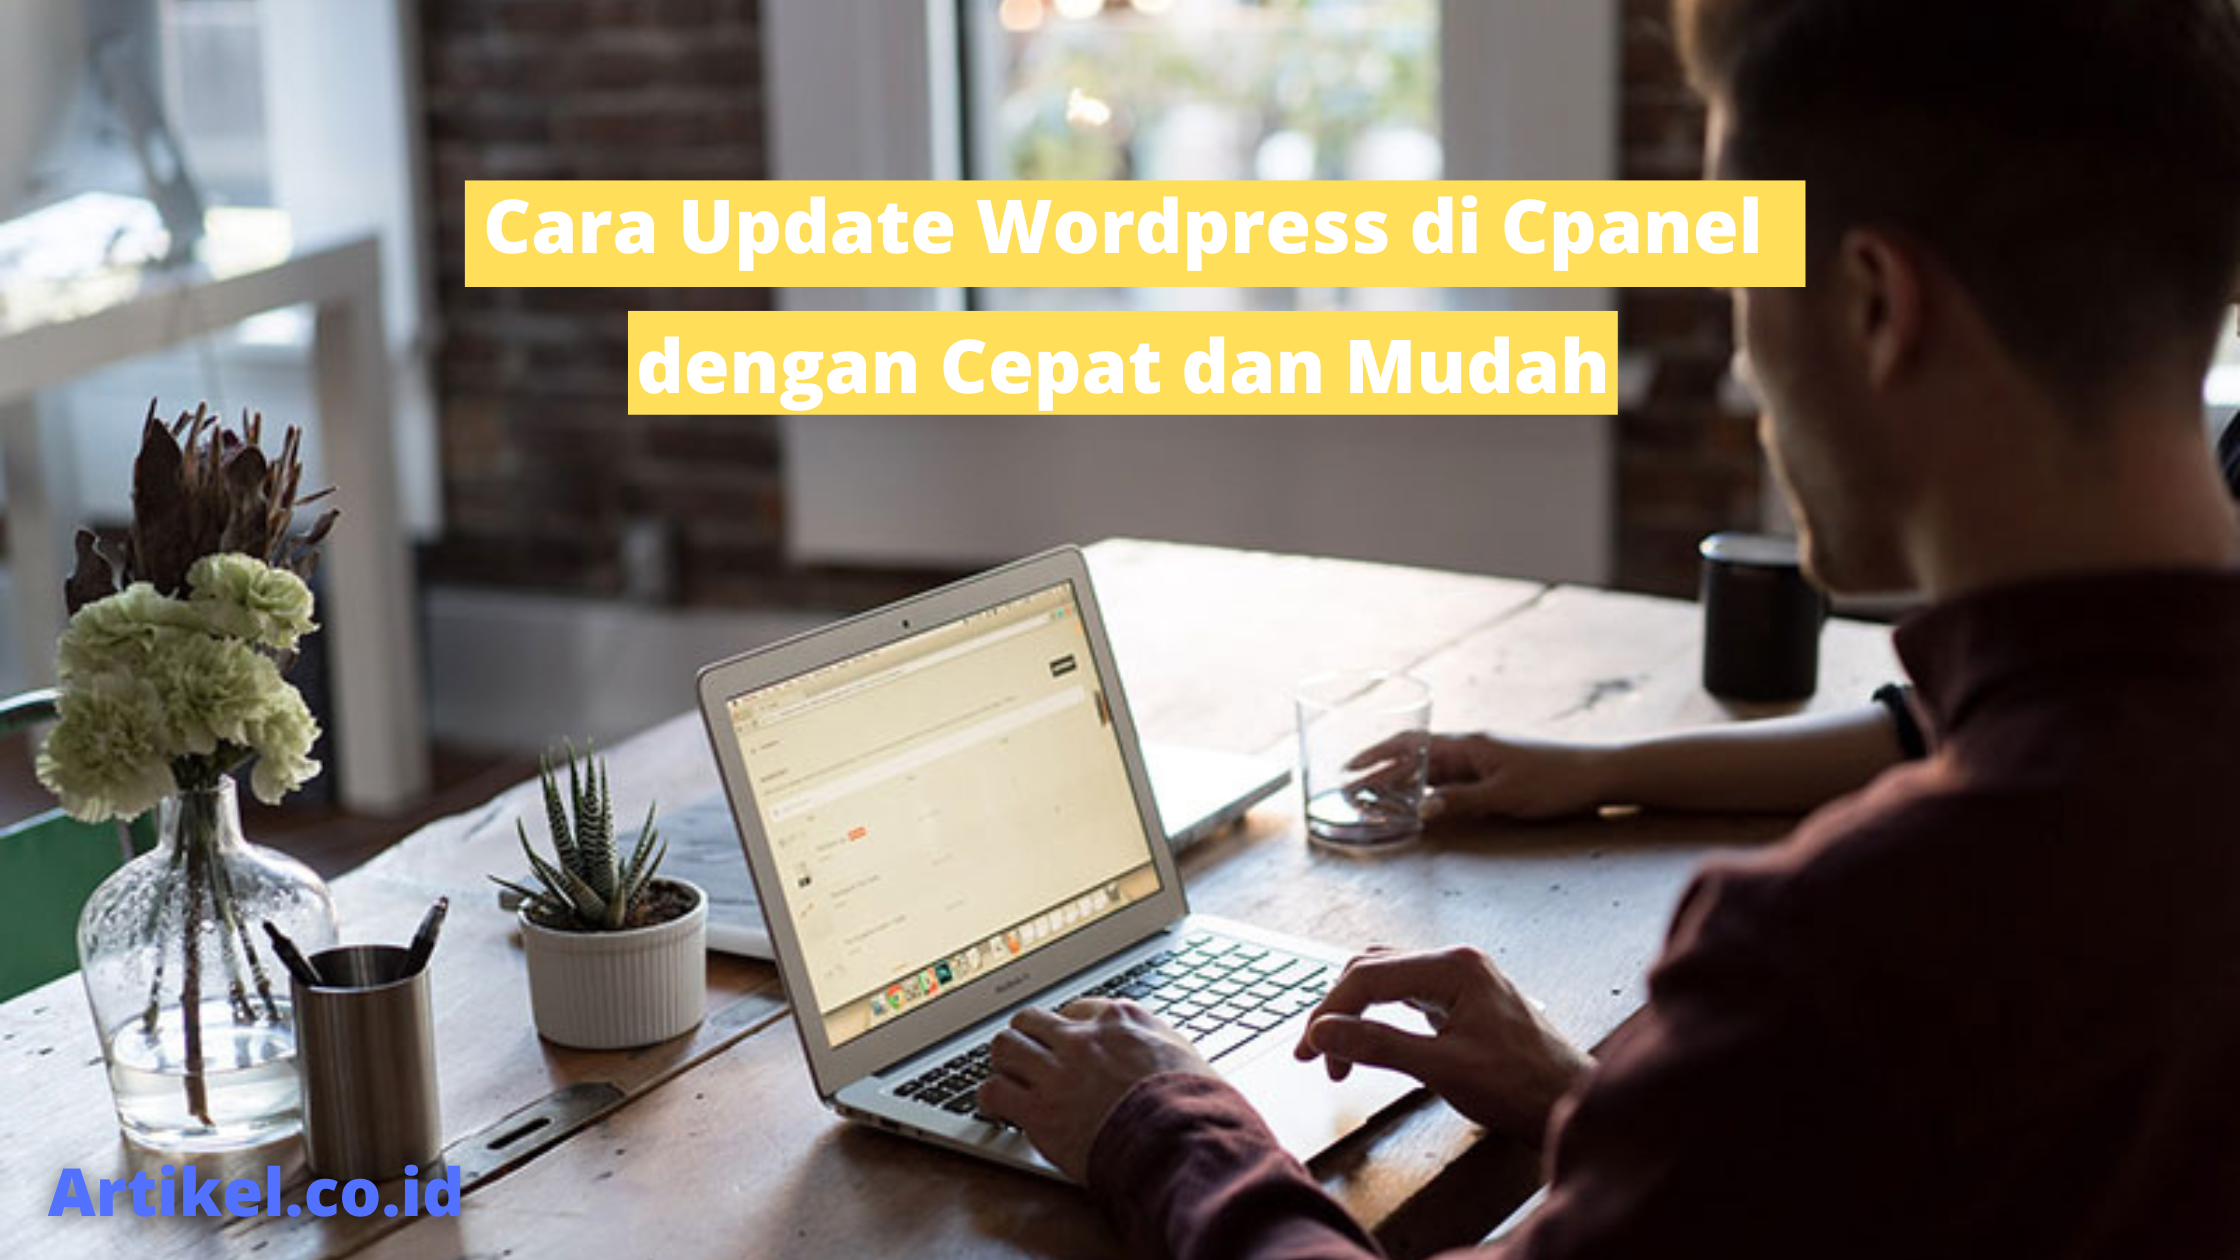 Cara Update Wordpress di Cpanel dengan Cepat dan Mudah